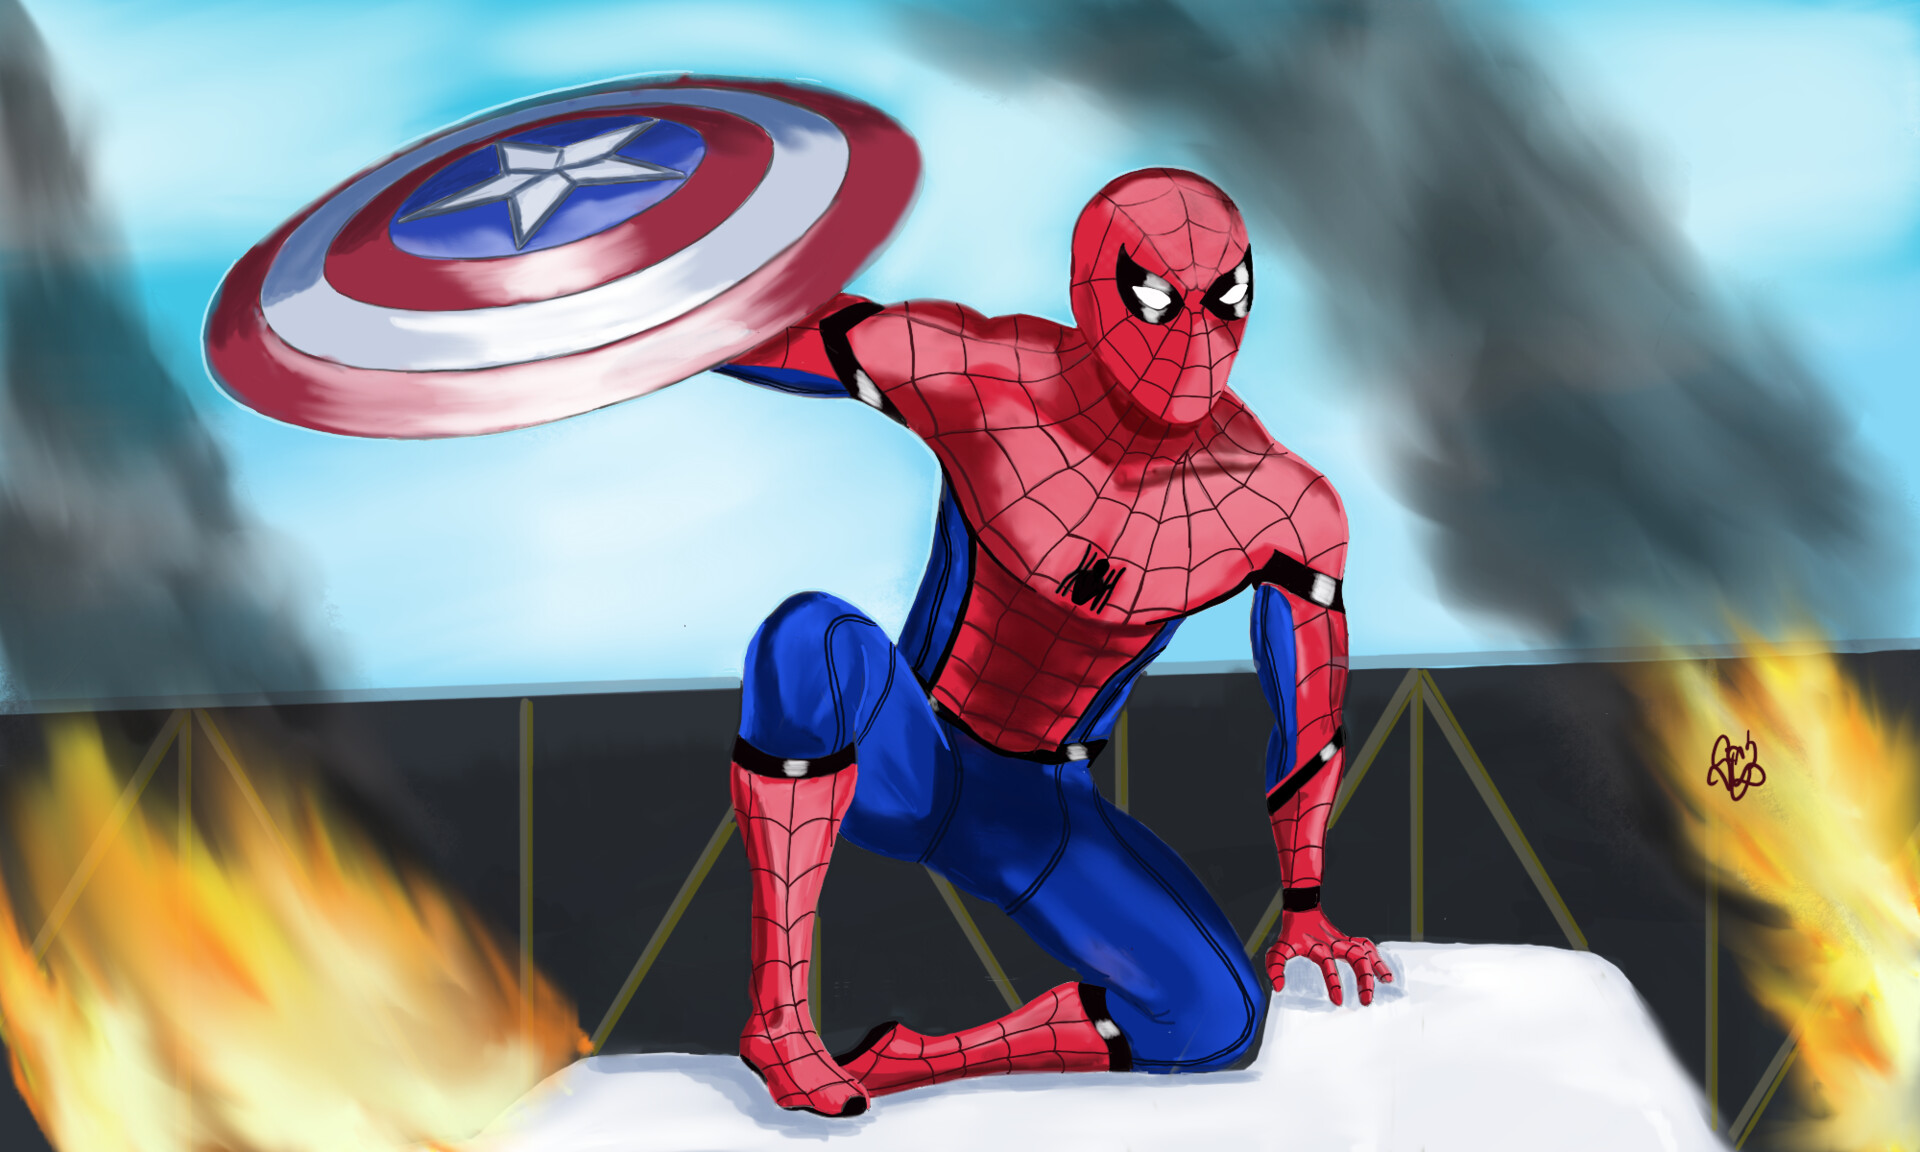 ArtStation - Spiderman from Civil War